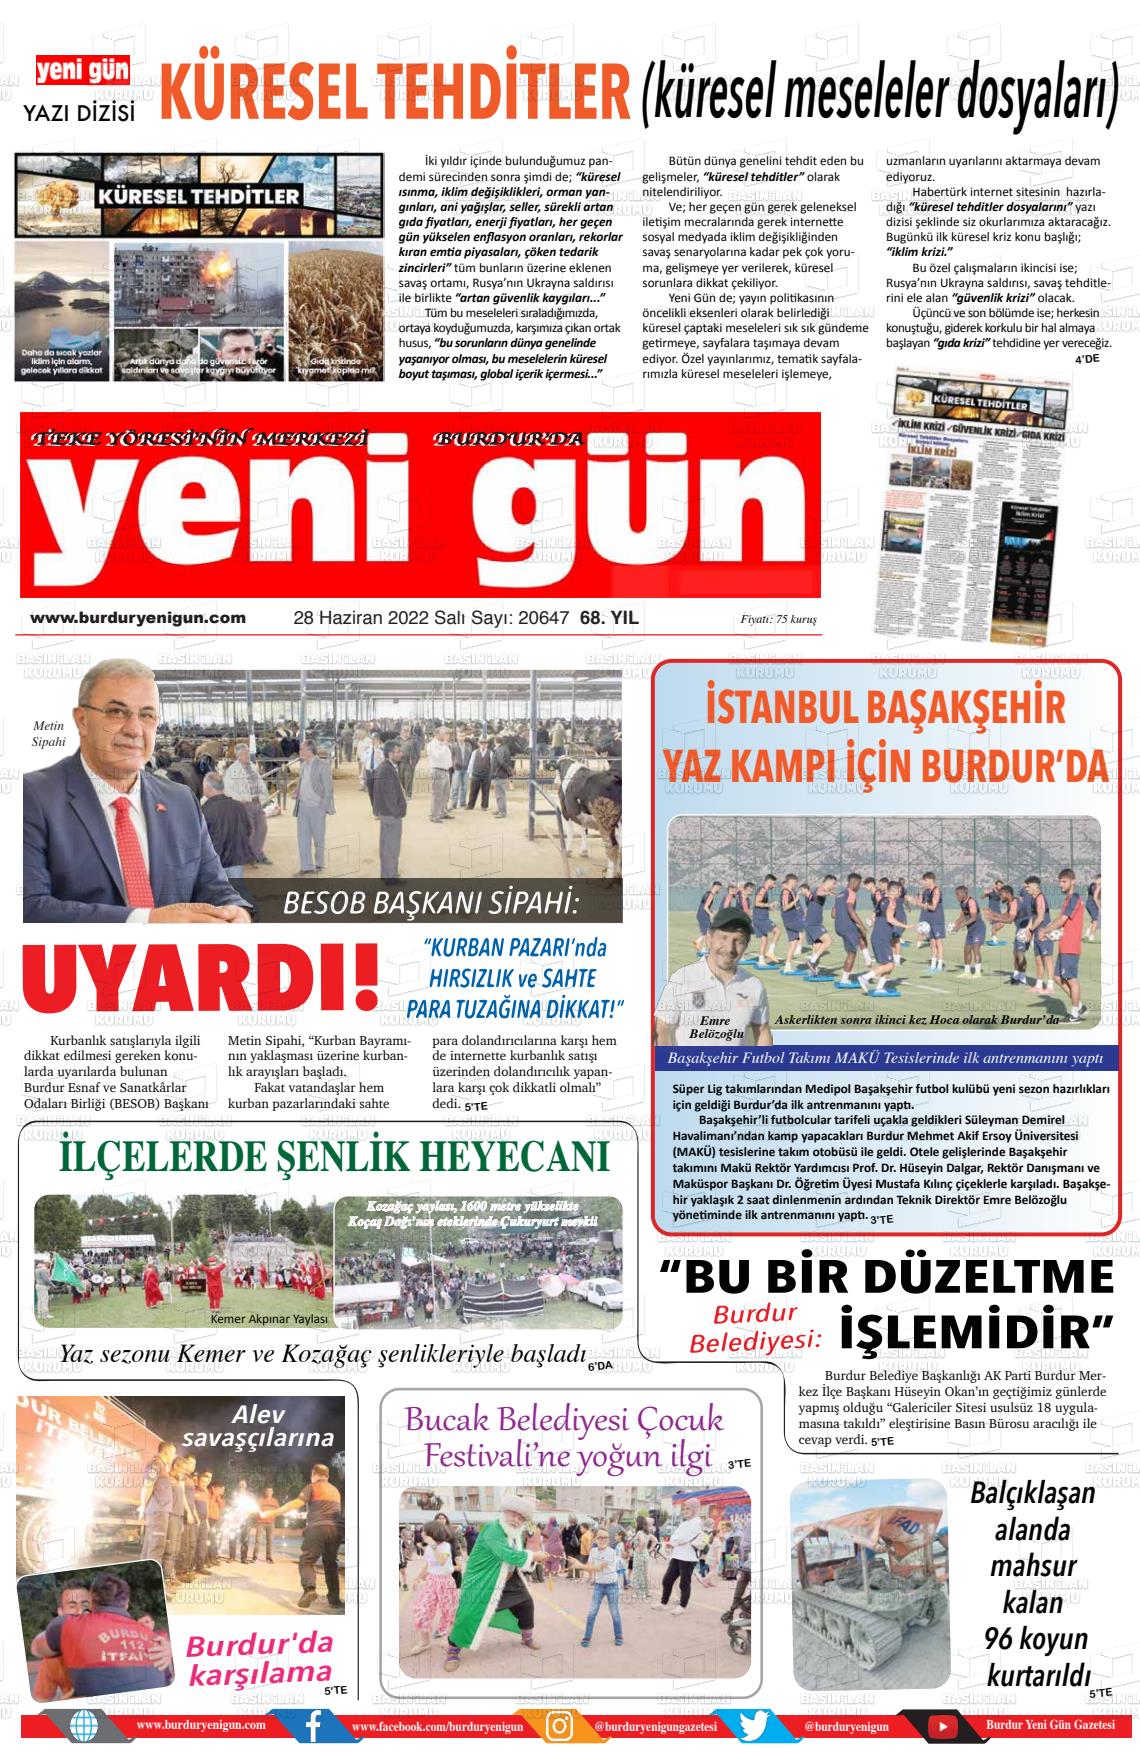 28 Haziran 2022 Burdur Yeni Gün Gazete Manşeti